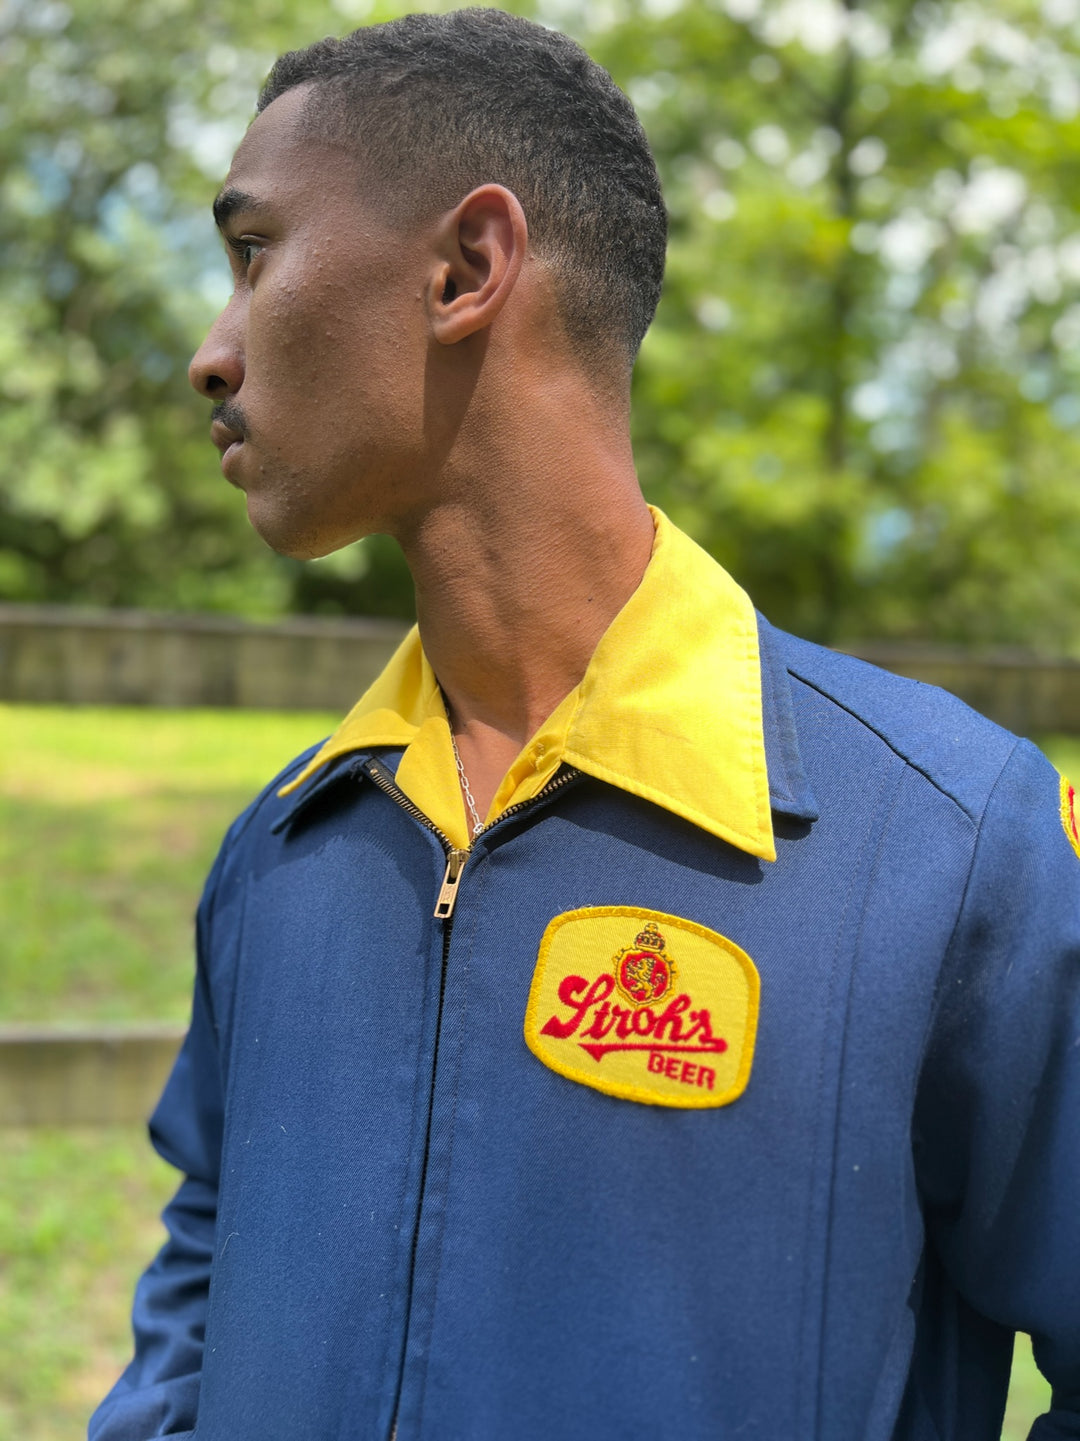 Men's Vintage Blue Work Uniform Jacket, Stroh's Beer